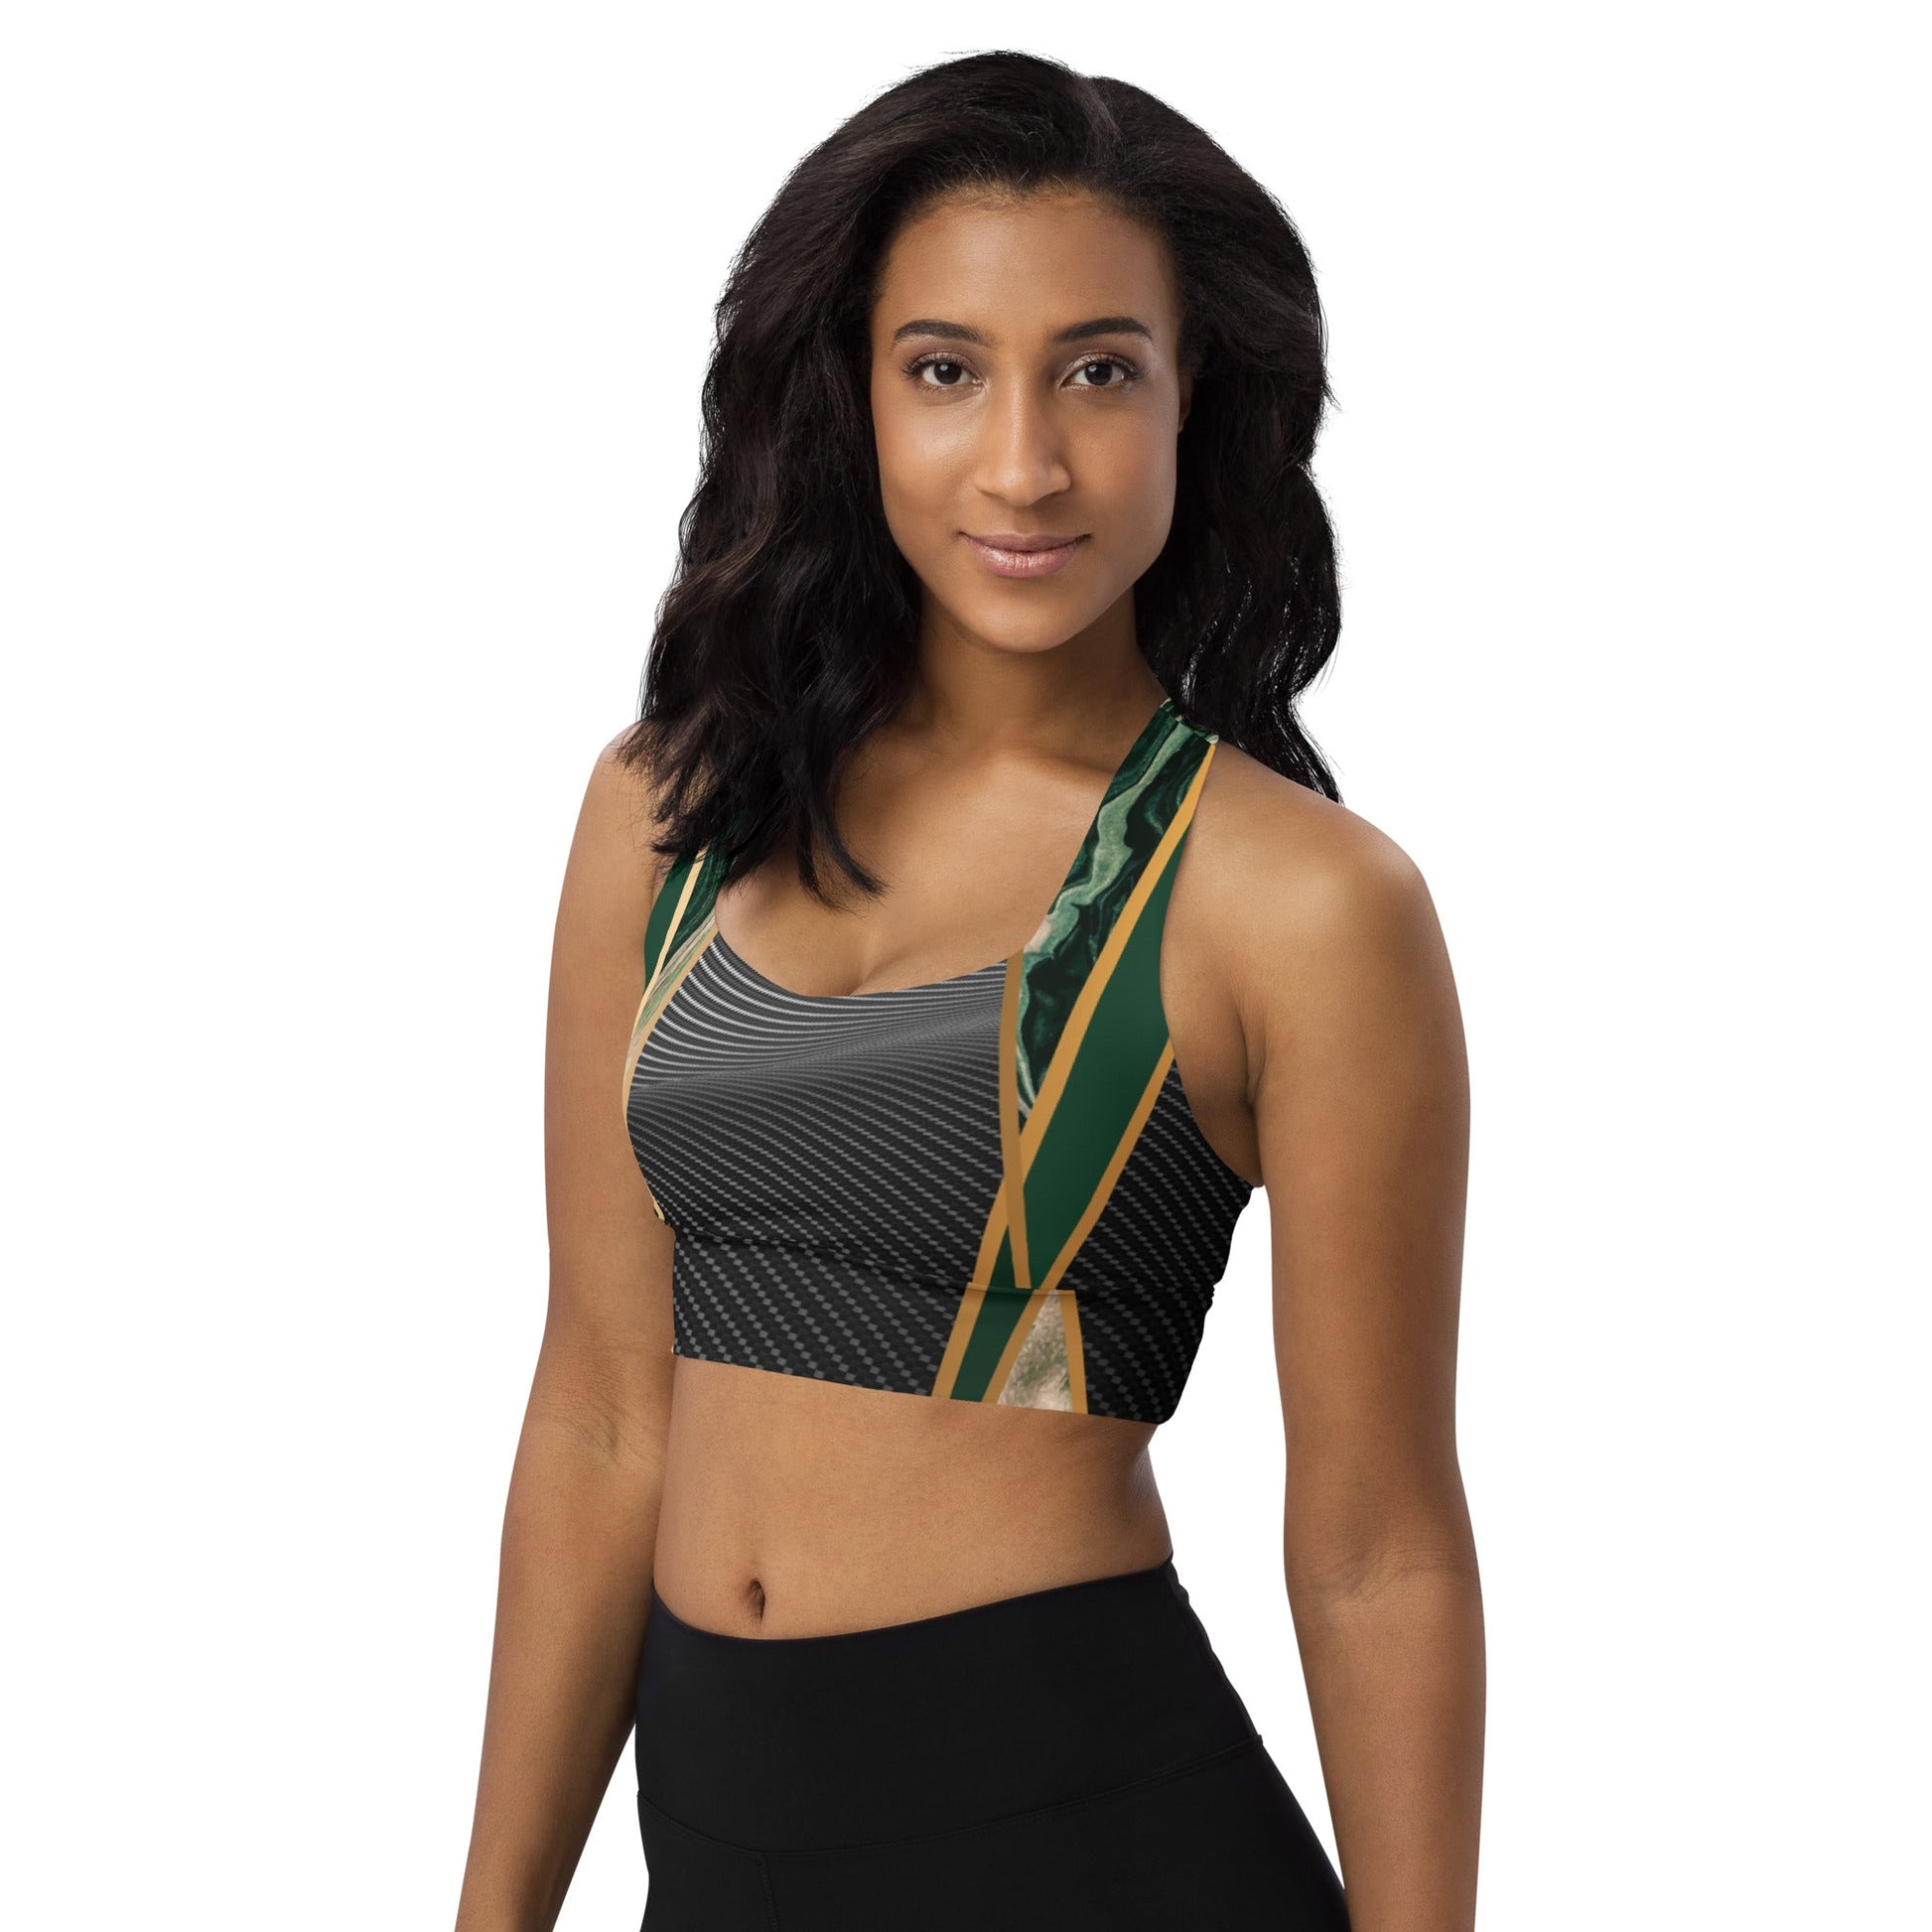 bonotee.com: carbon fiber sports bra, adidas sports bras bare breasts, adidas sports bras, sports bras uk